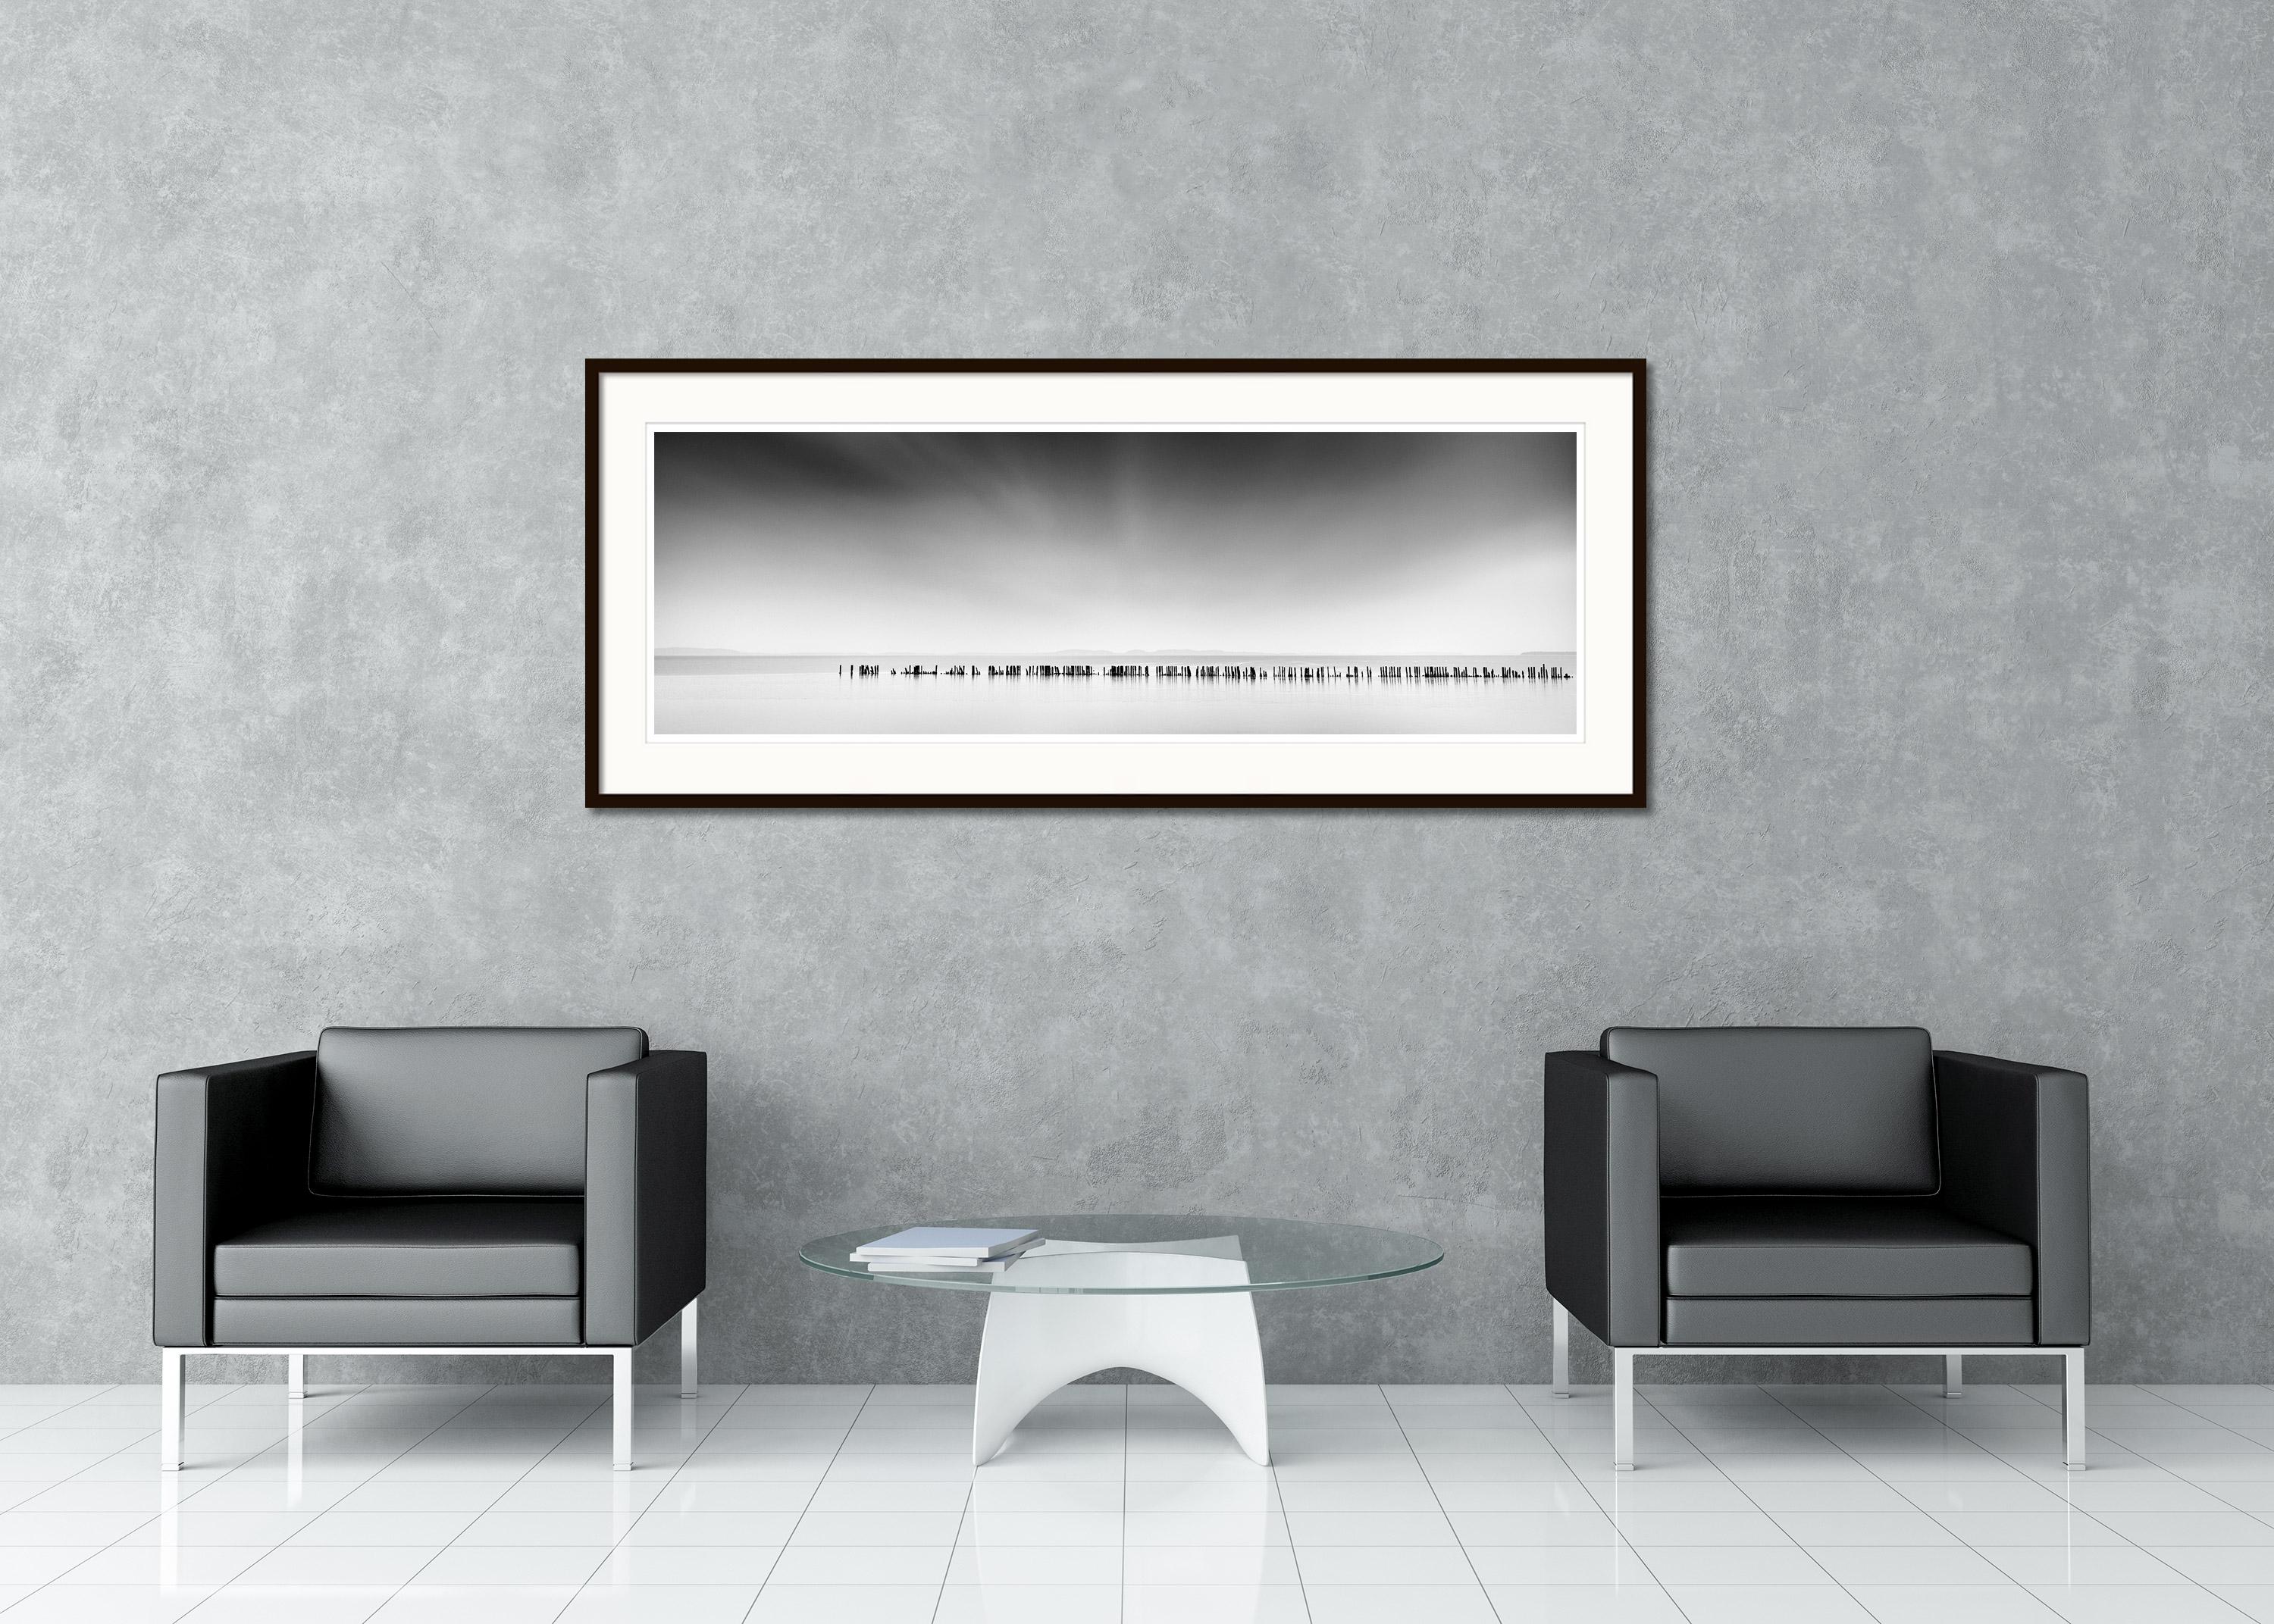 Schwarz-Weiß-Panorama-Langzeitbelichtung von Wasserlandschaften. Pigmenttintendruck, Auflage 7, signiert, betitelt, datiert und nummeriert vom Künstler. Mit Echtheitszertifikat. Bedruckt mit einem 4 cm breiten weißen Rand. 
International